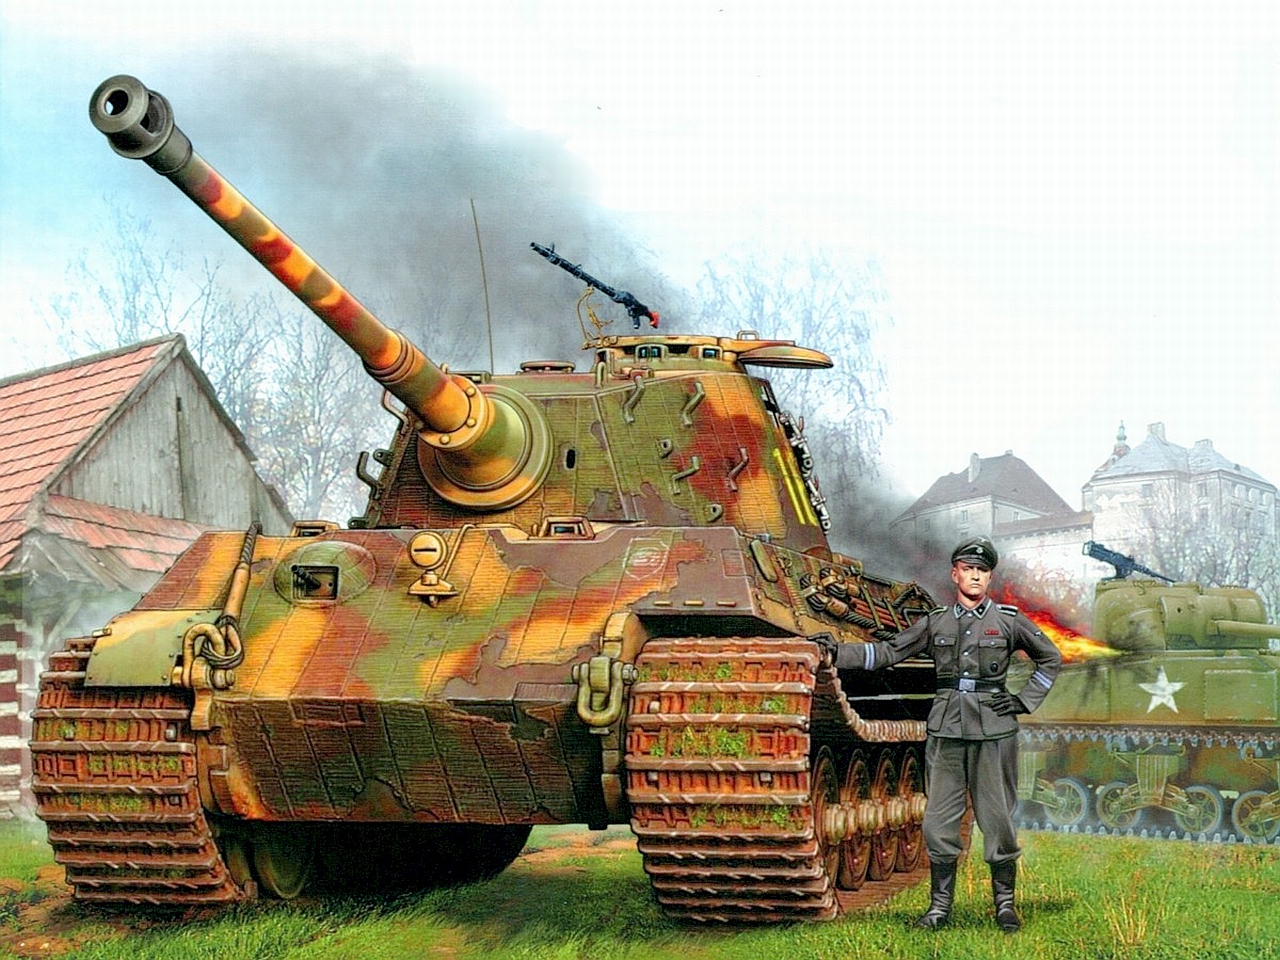 Лучшим танком второй мировой войны был признан выберите ответ пт 76 пантера тигр т 34